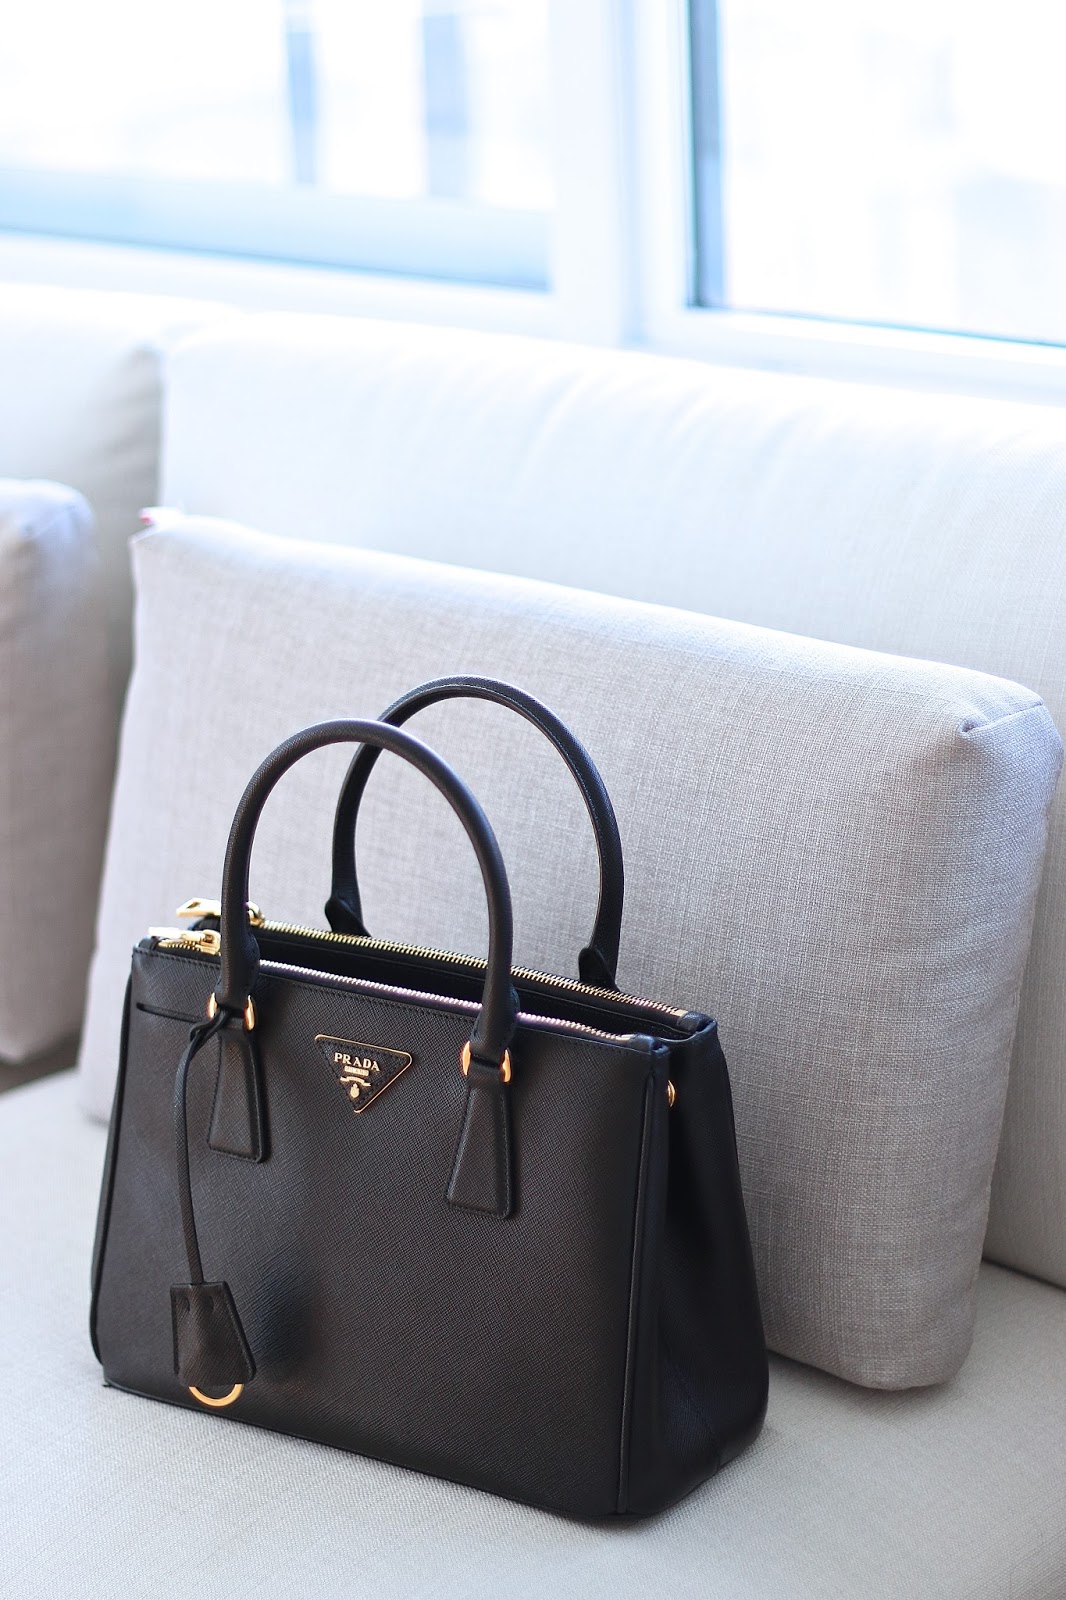 Prada Saffiano Double Zip Handbag Review